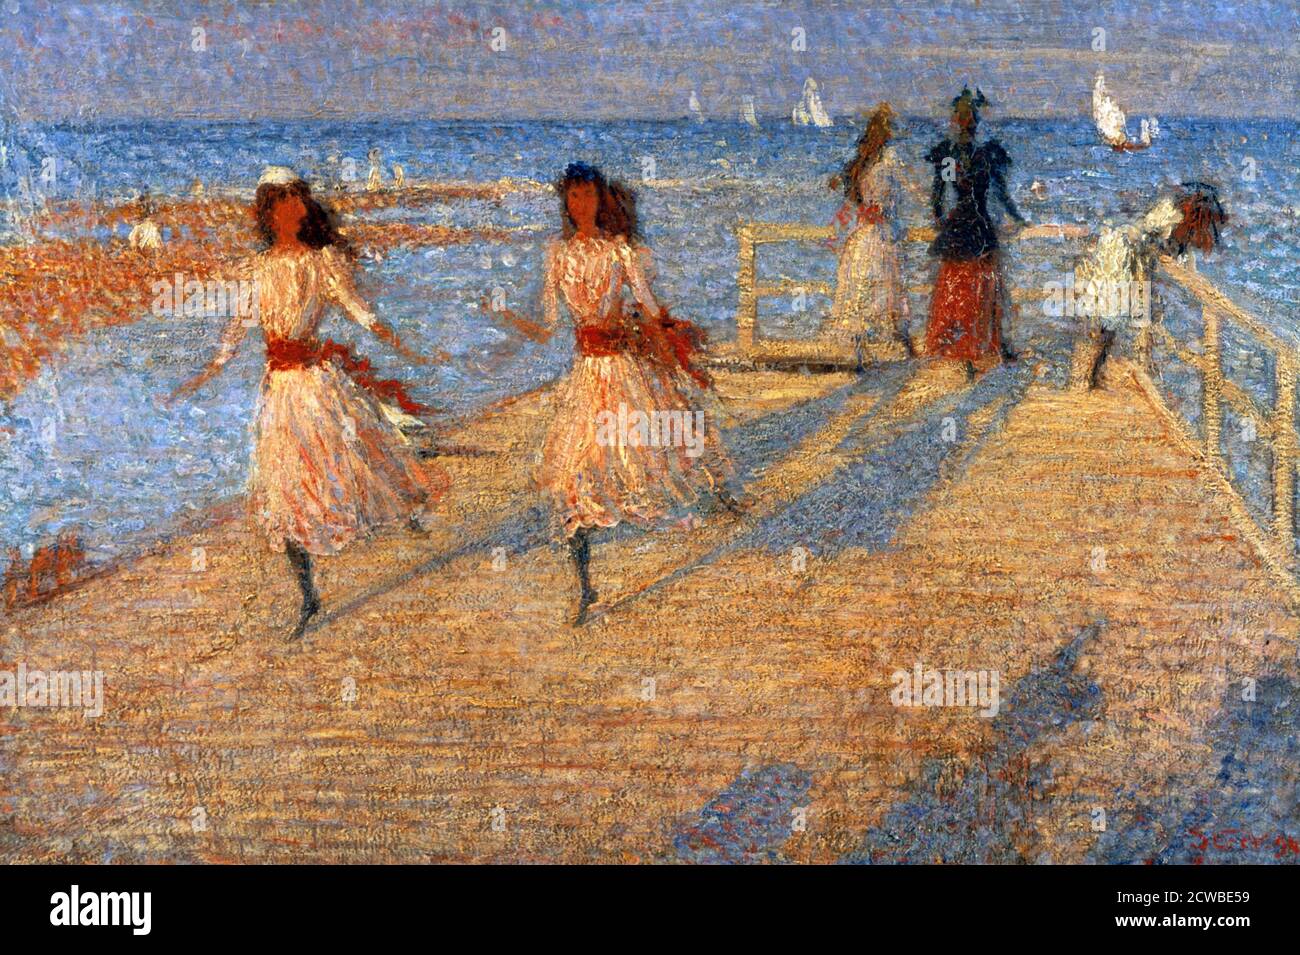 Girls Running, Walberswick Pier', 1888-1894 Artista: Philip Wilson Steer, Steer hizo muchas visitas a Walberswick en Suffolk, donde tenía amigos. Completó una serie de pinturas de la playa. Foto de stock